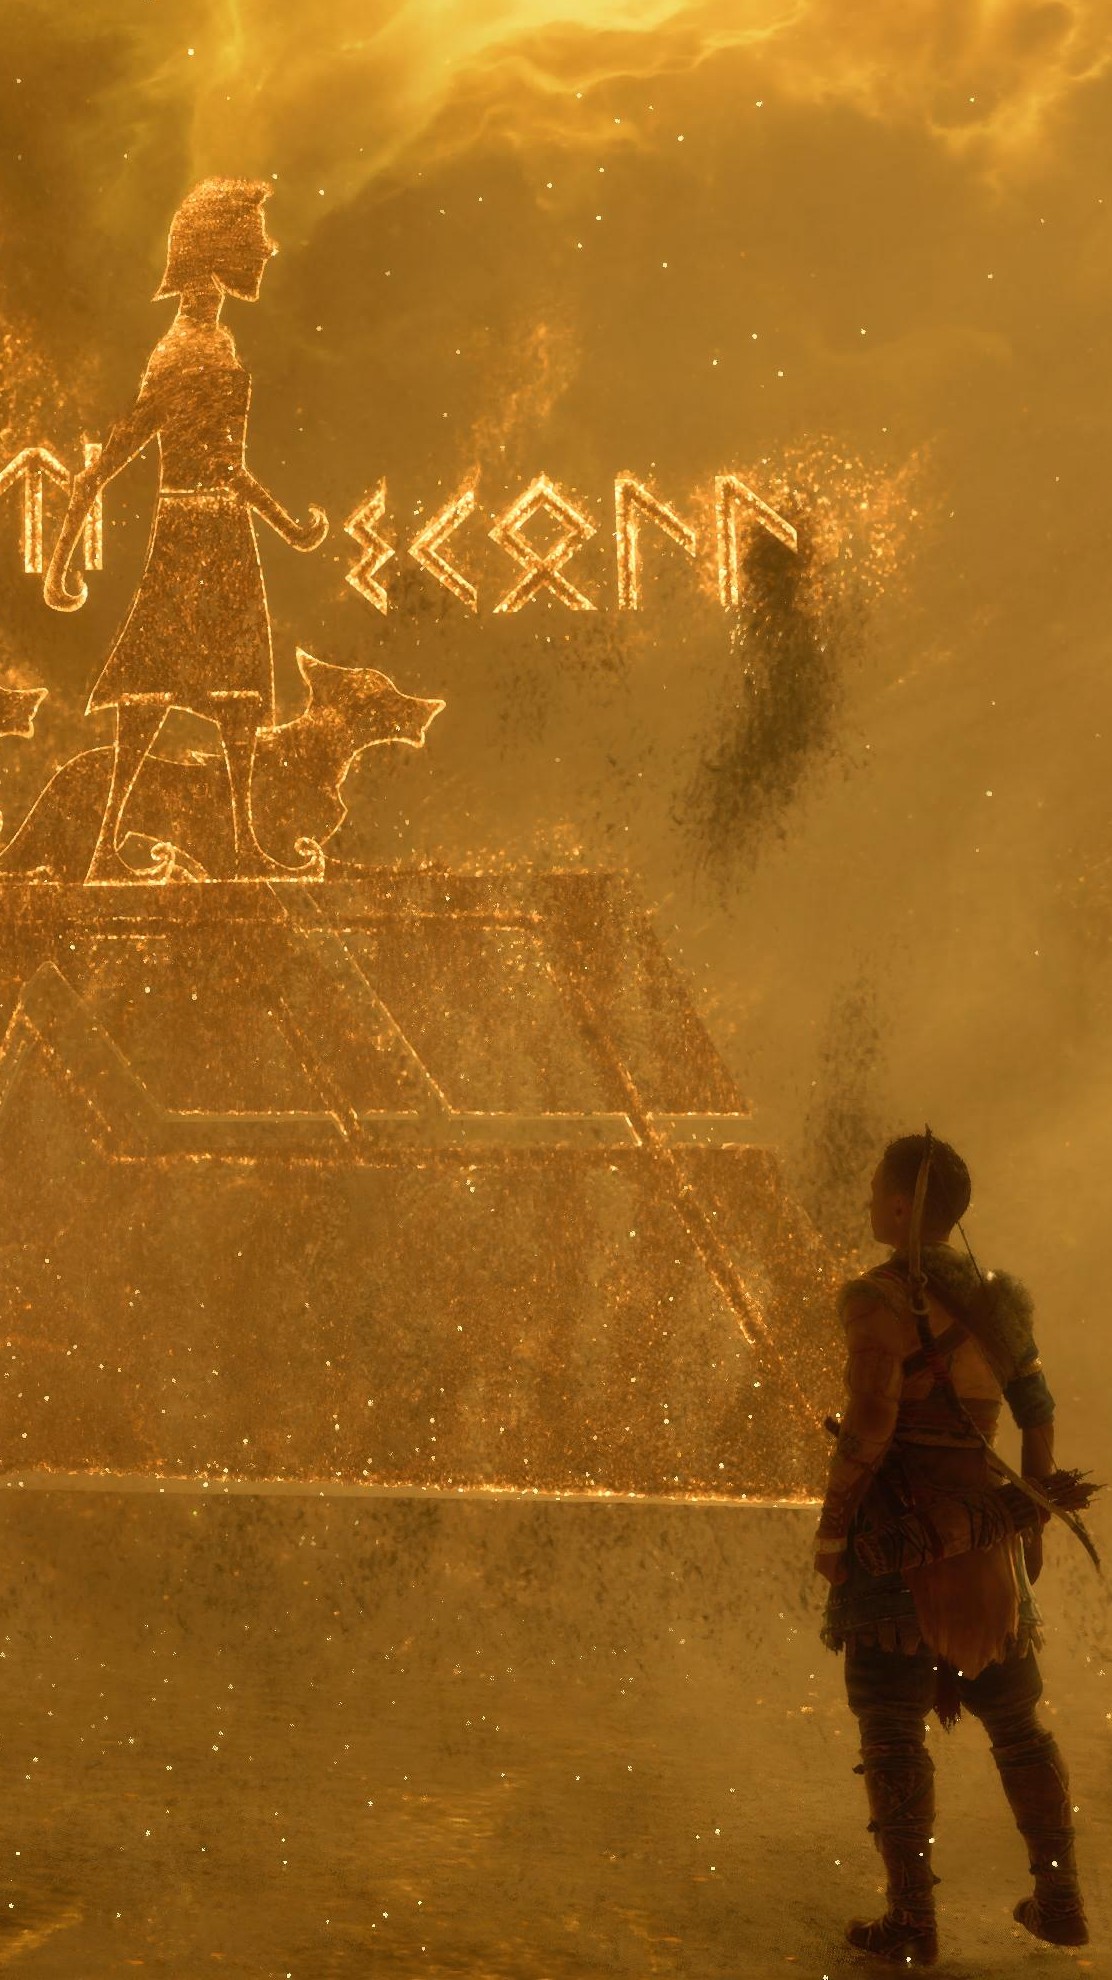 God of War Ragnarok pode ser lançado para PS4, aponta criador da franquia -  Canaltech